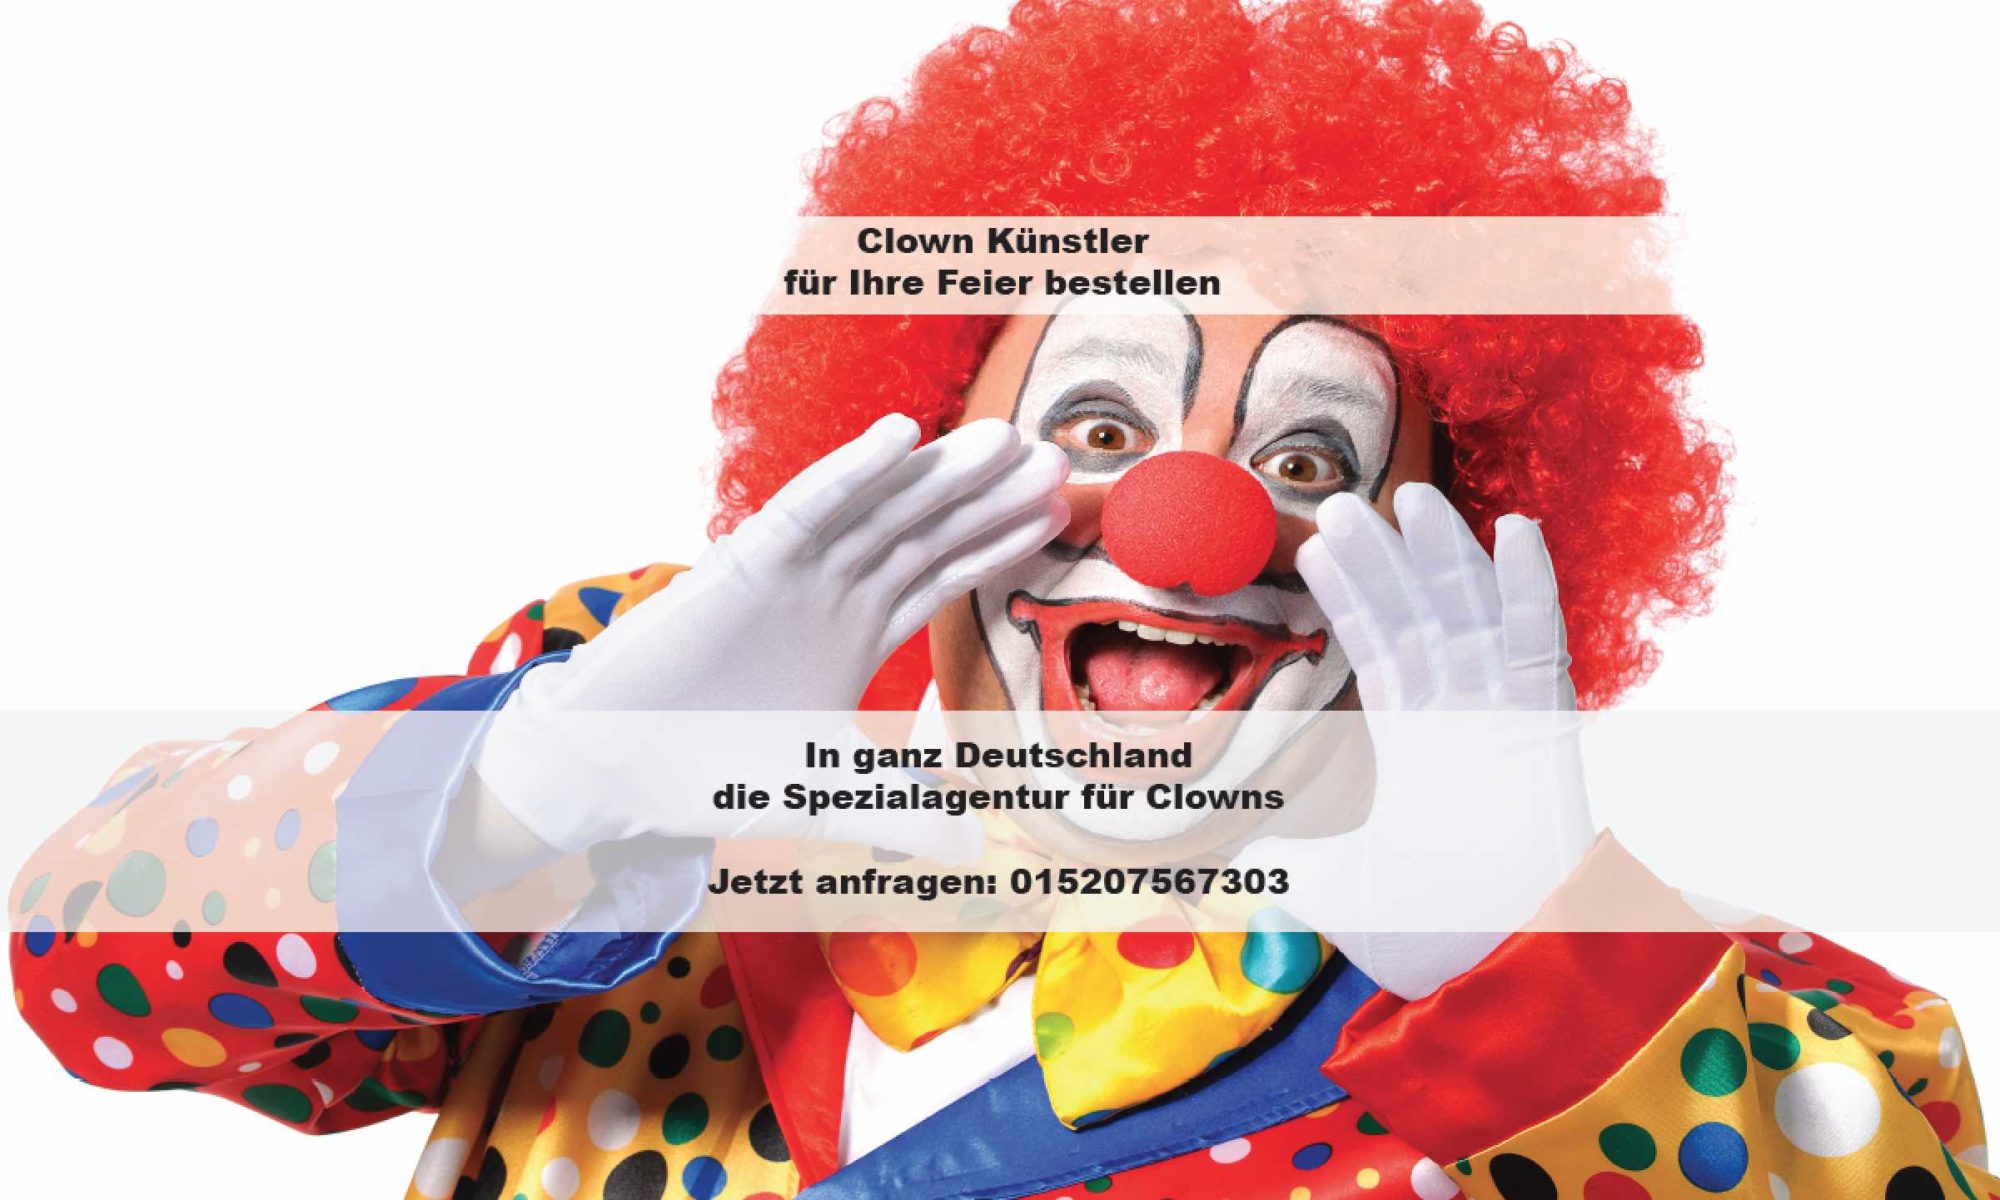 Clown für Ihre Feier bestellen, PartyClown in Deutschland, Clown Köln, Clown Frankfurt, Clown Stuttgart, Clown München, Clown Hamburg, Clown Berlin, Clown mieten, Clown Kindergeburtstag, Clown Kita, Clown Show, ZauberClown Show, Ballon Modellage